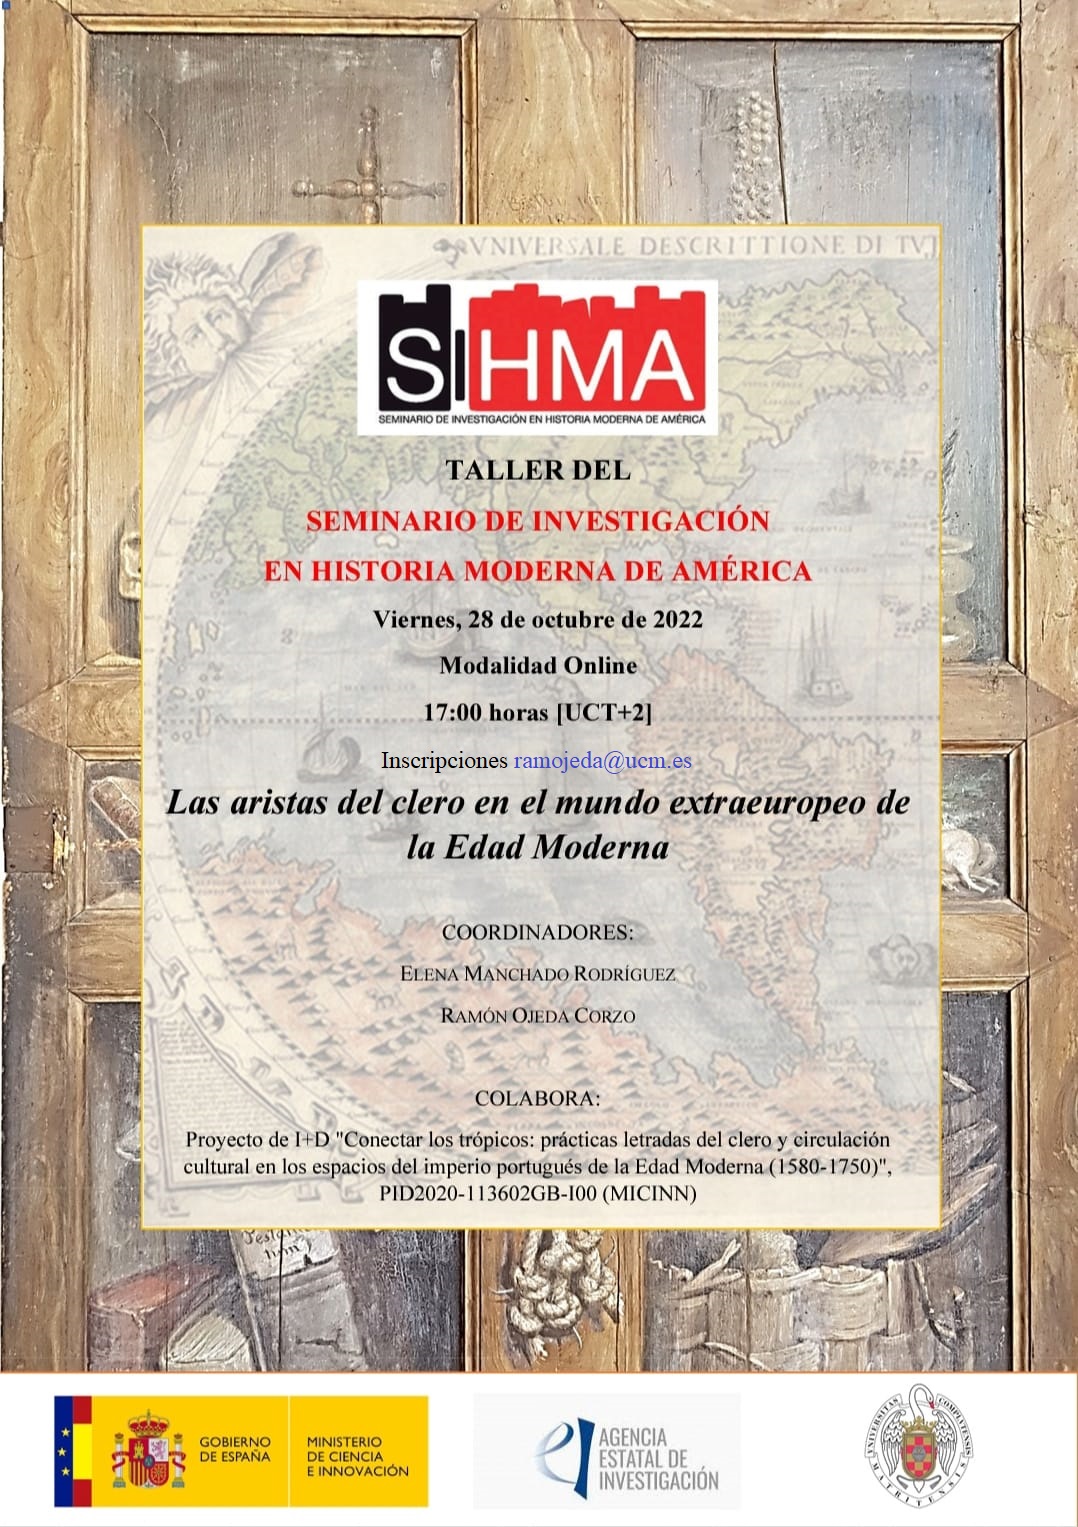 Taller del Seminario de Investigación en Historia Moderna de América - 28.10.2022